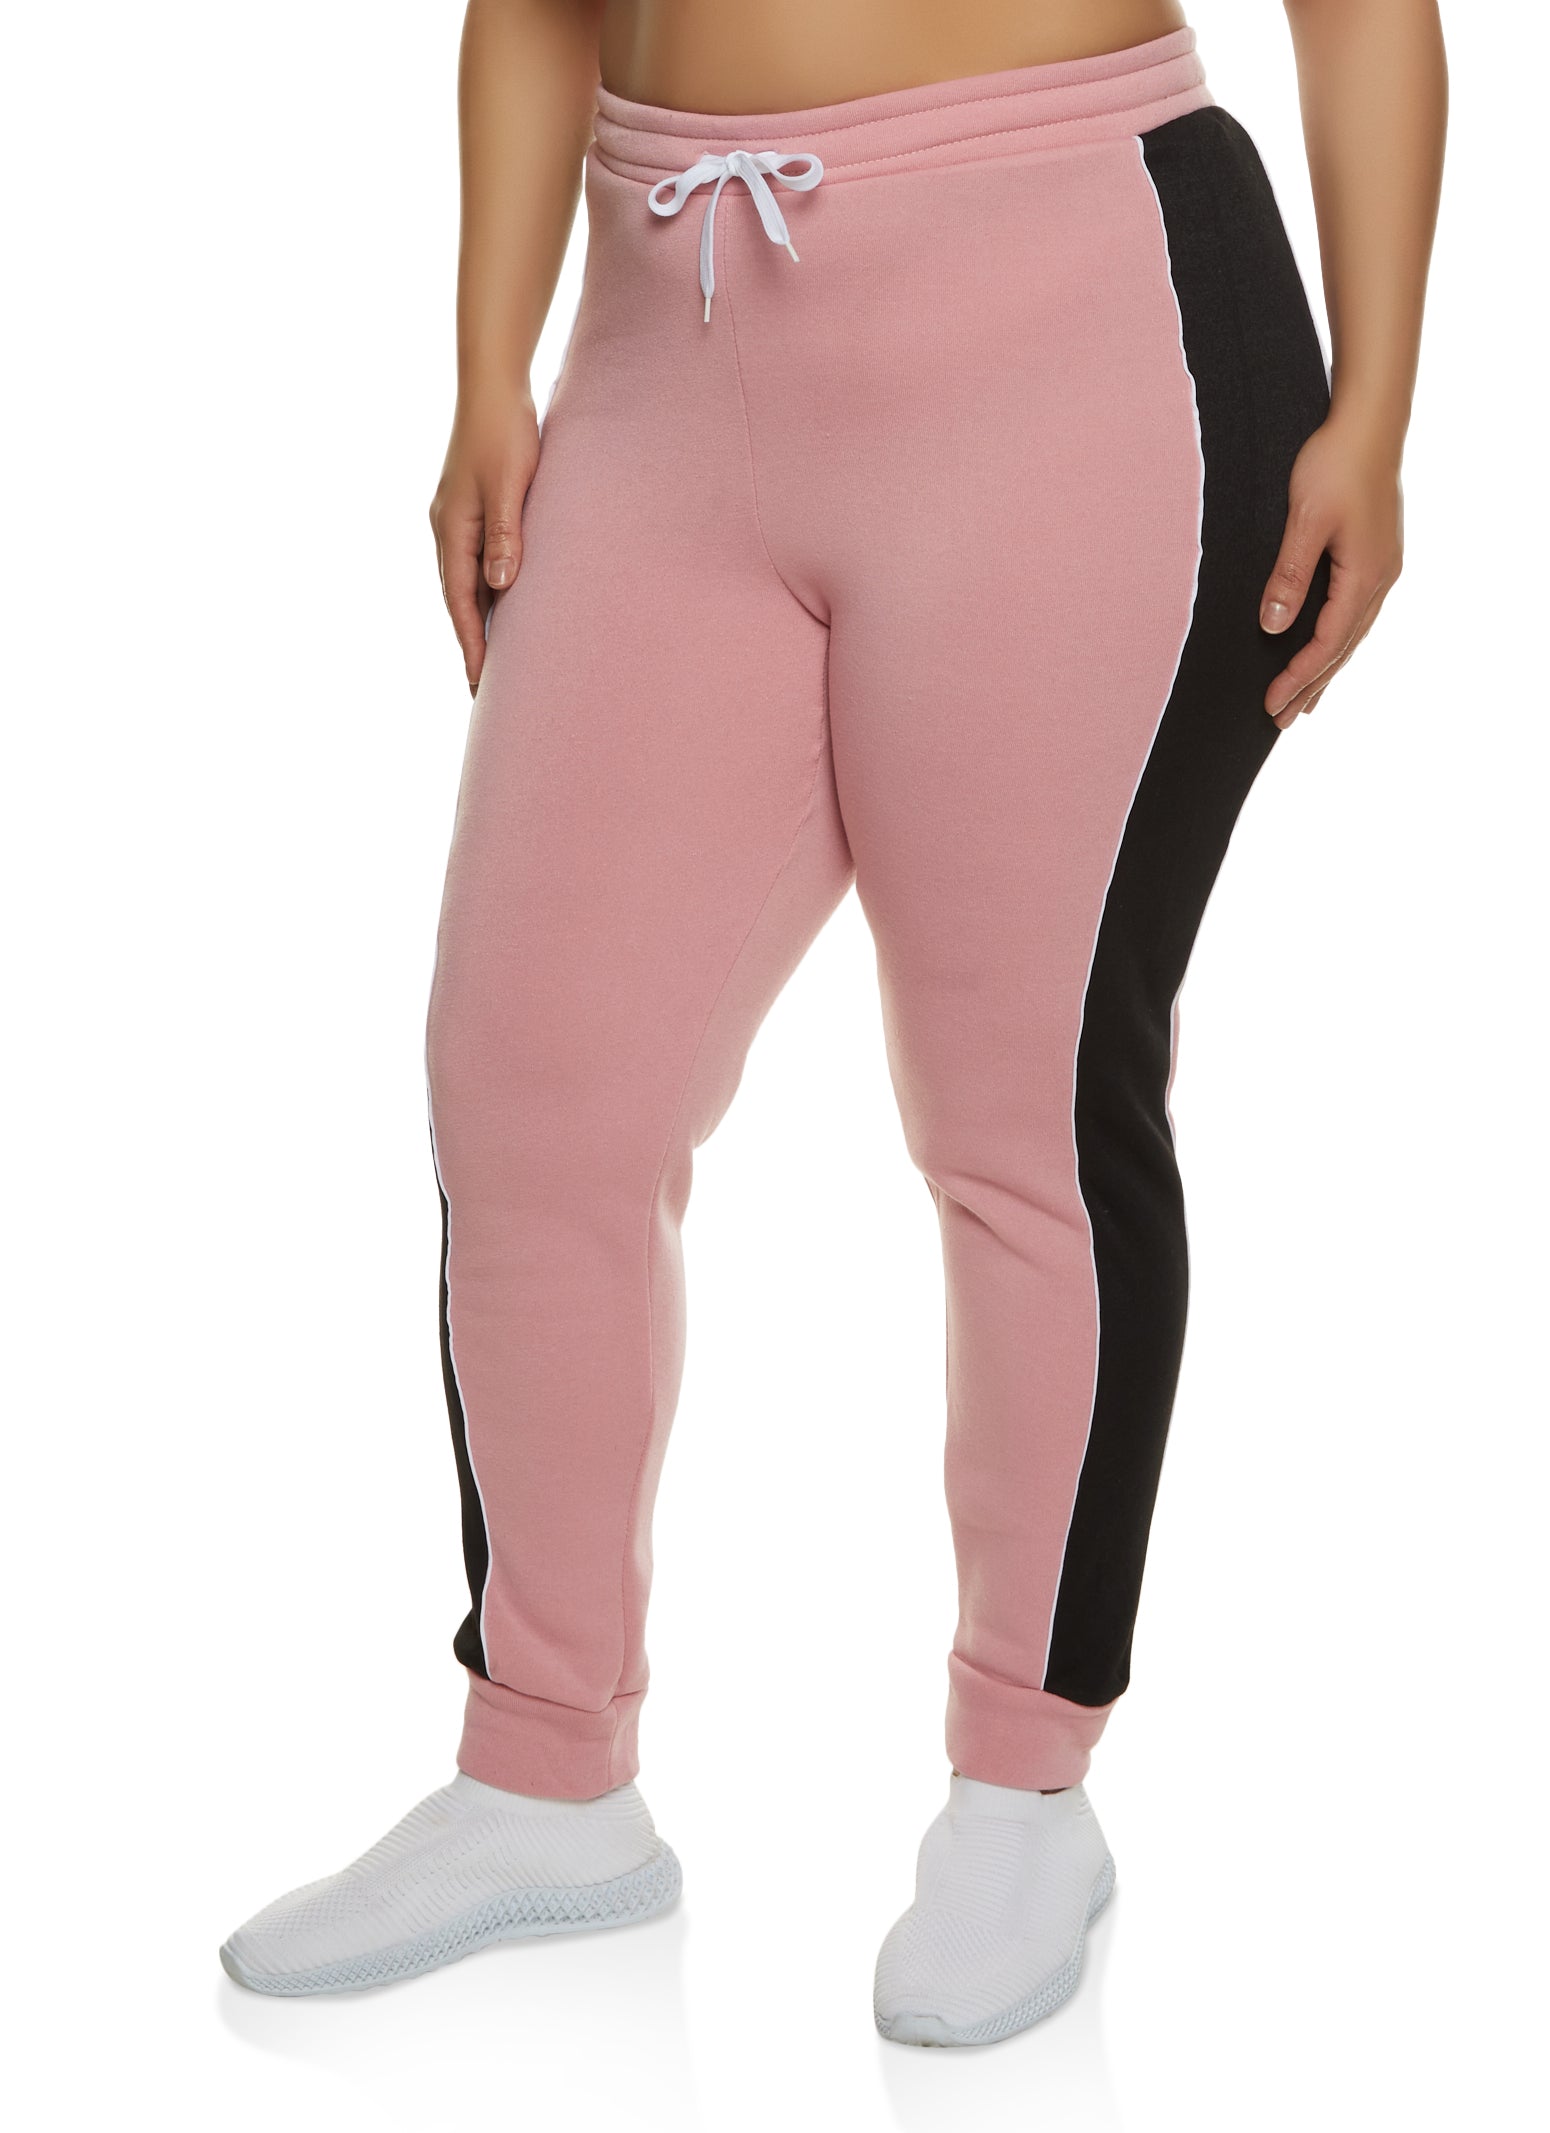 Unique Bargains Women's Plus Size Sweatpants Elastic Waist Joggers Pants